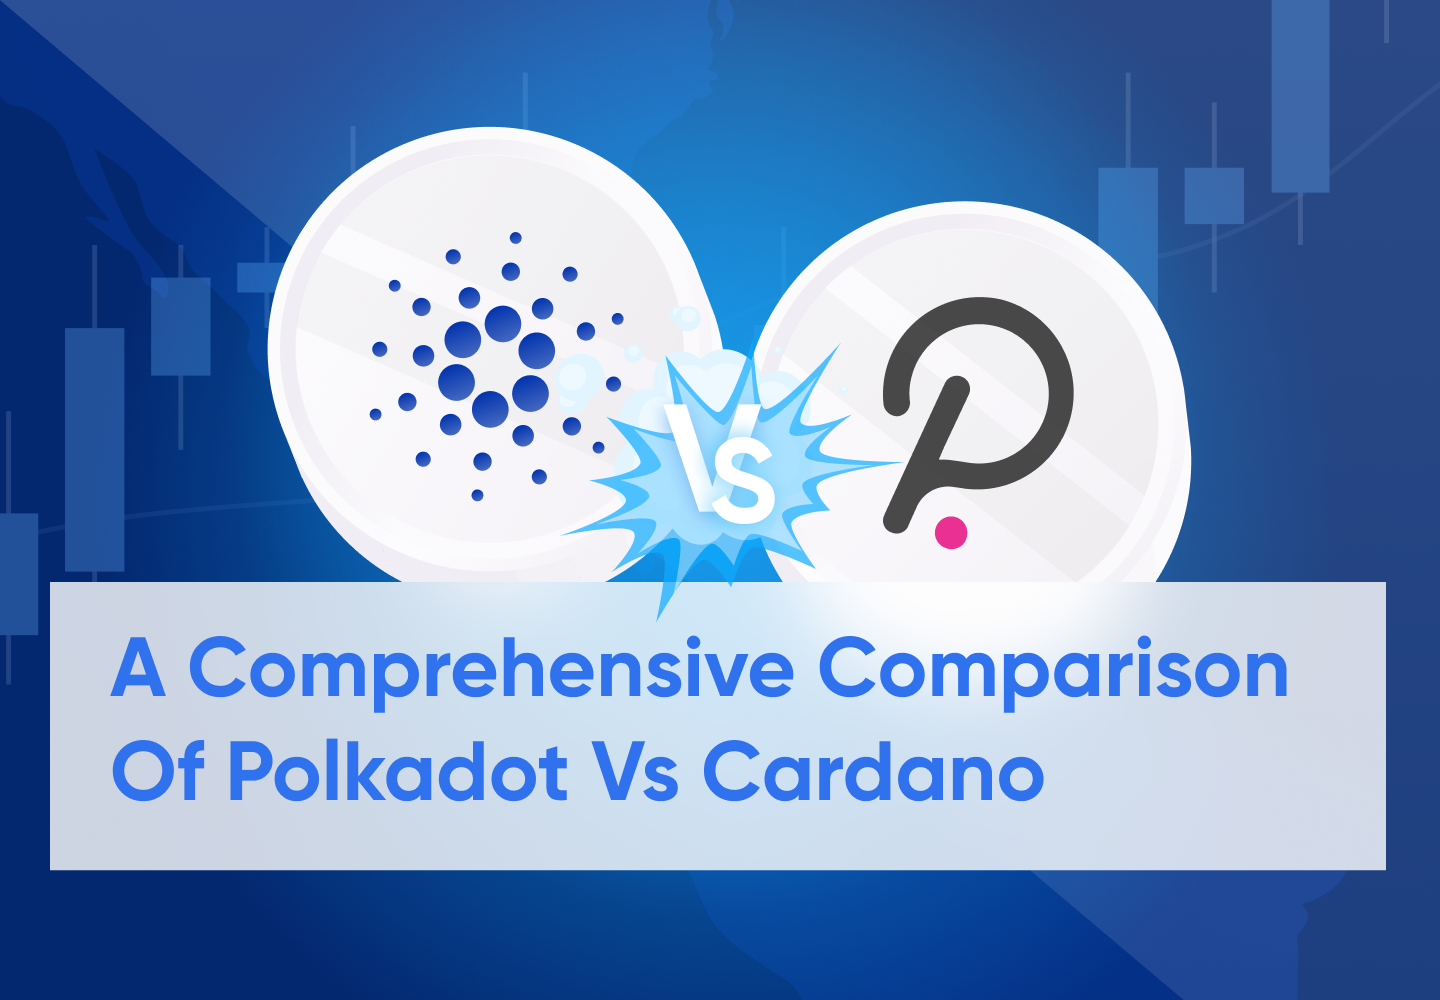 A comprehensive comparison of Polkadot vs Cardano